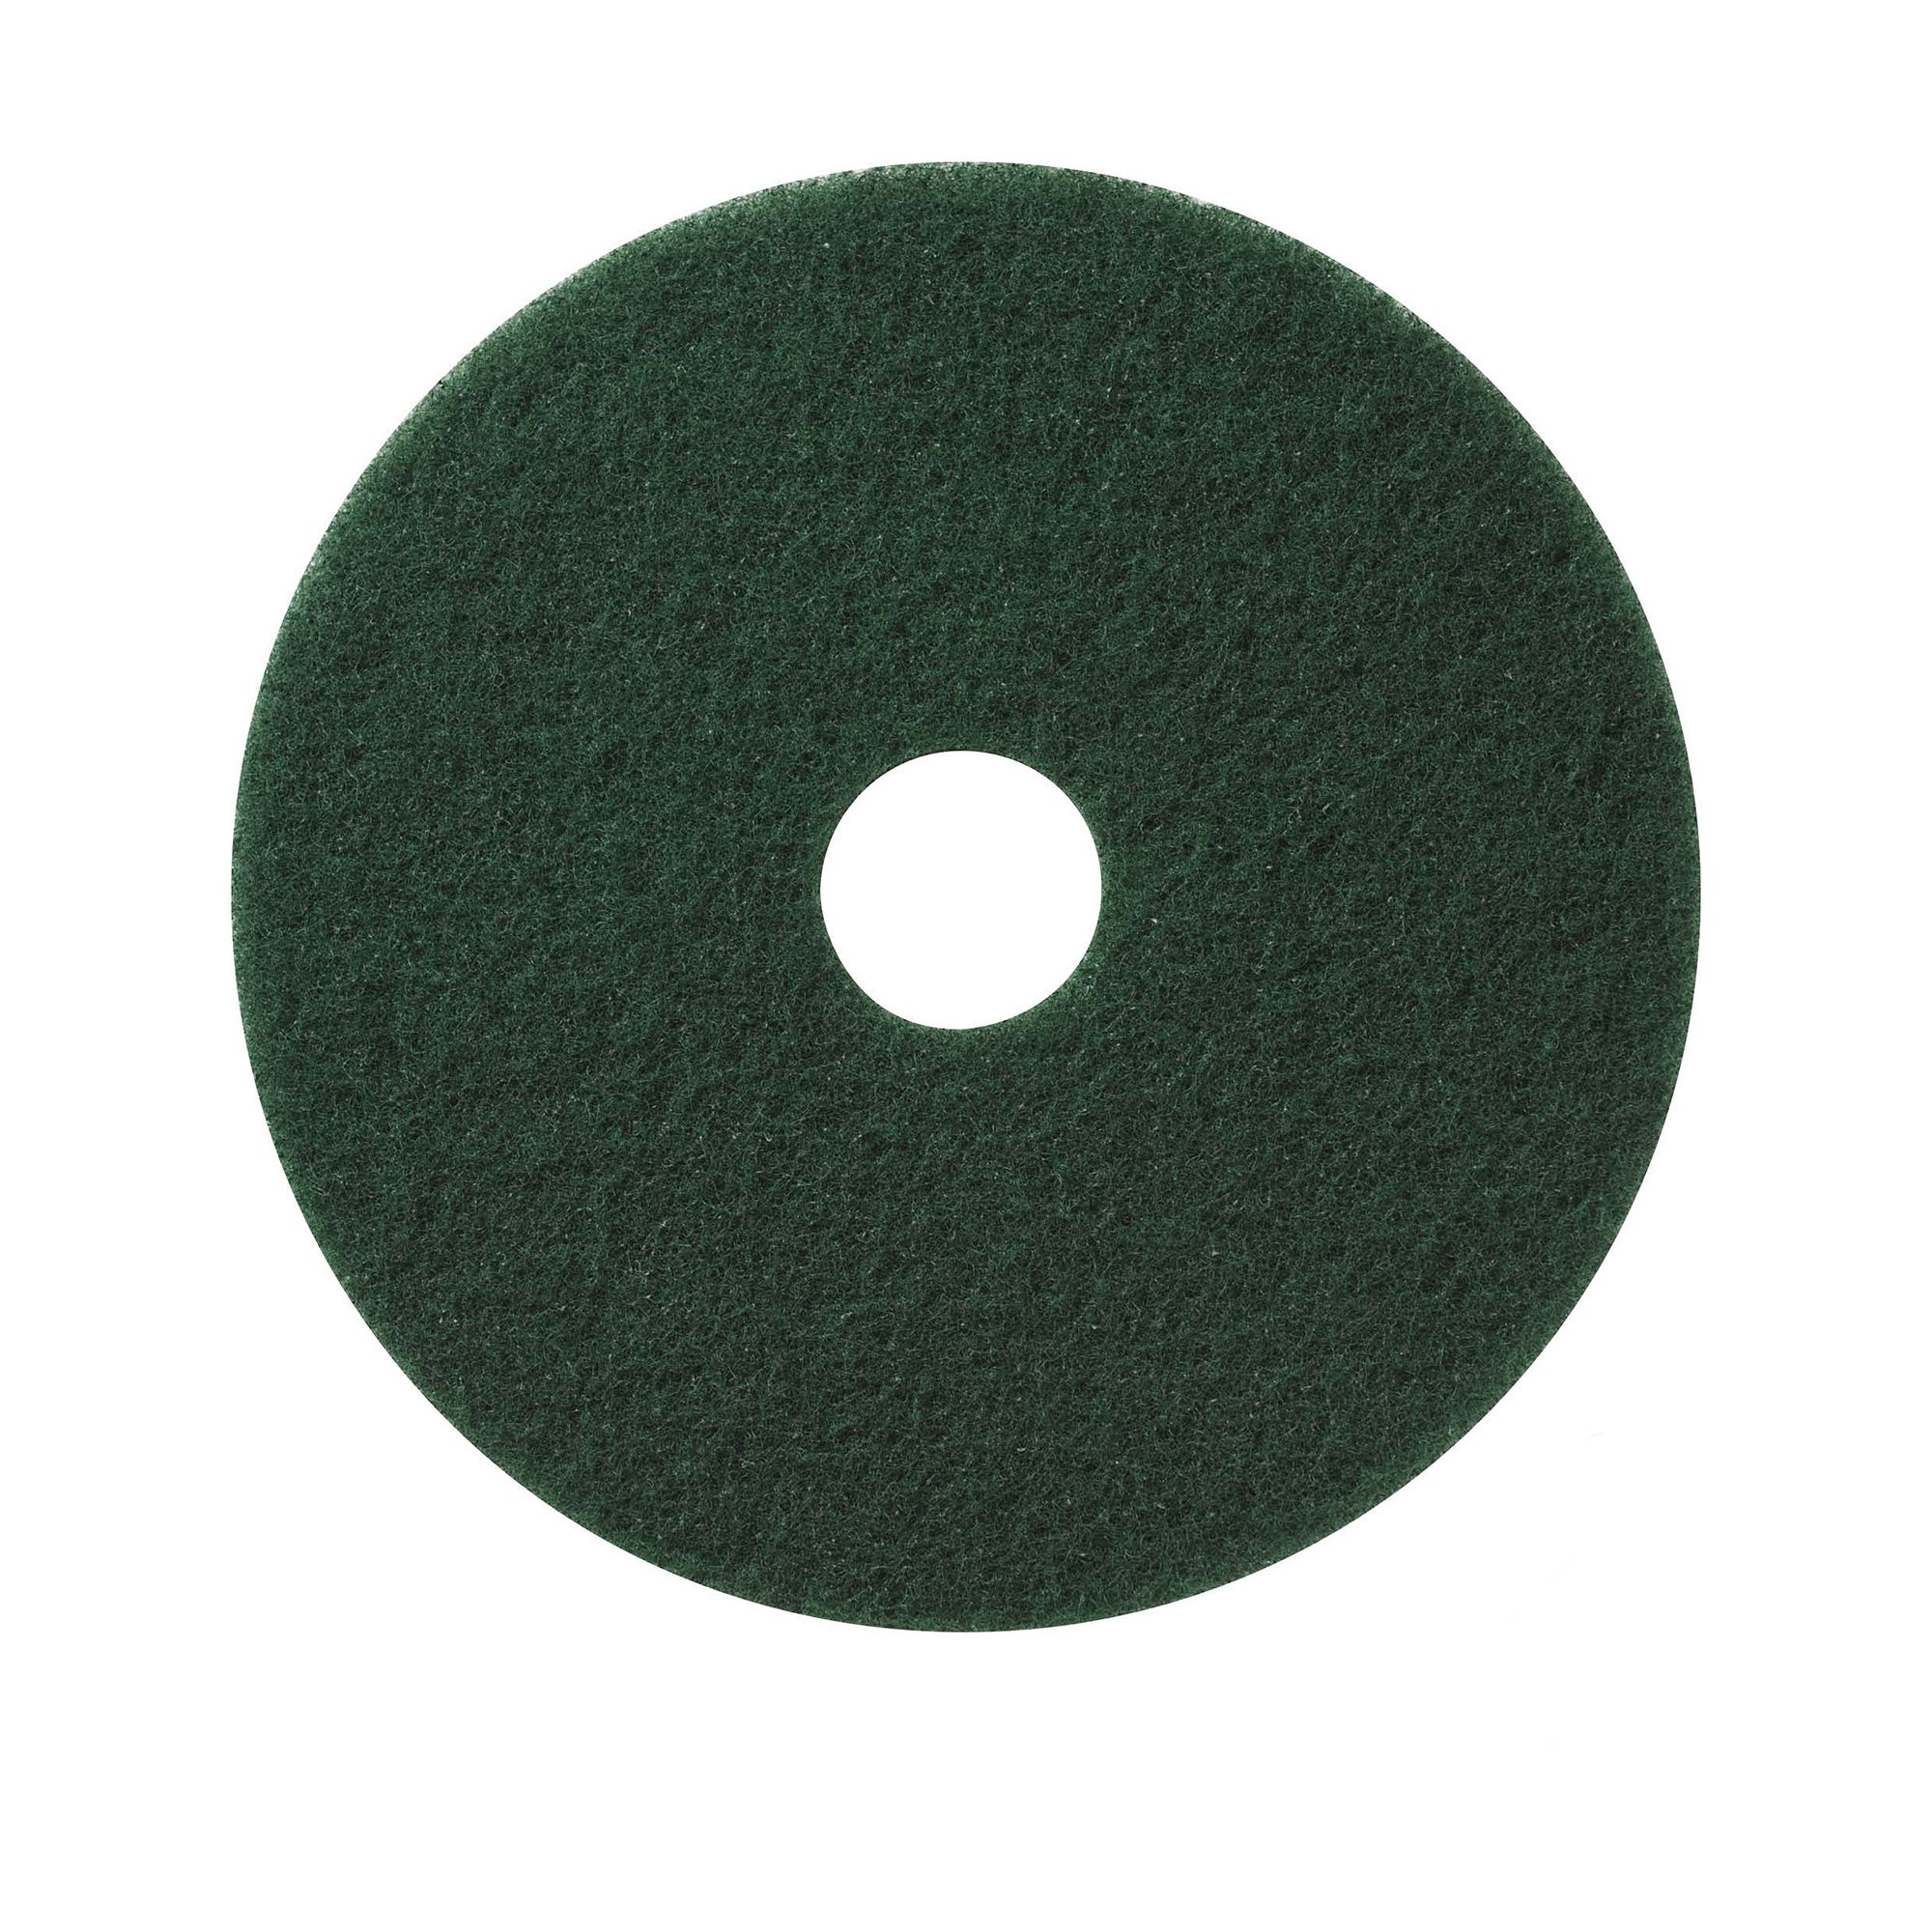 NuPad groen (zwaar schrobben), per 5 stuks, 13 inch / 330 mm